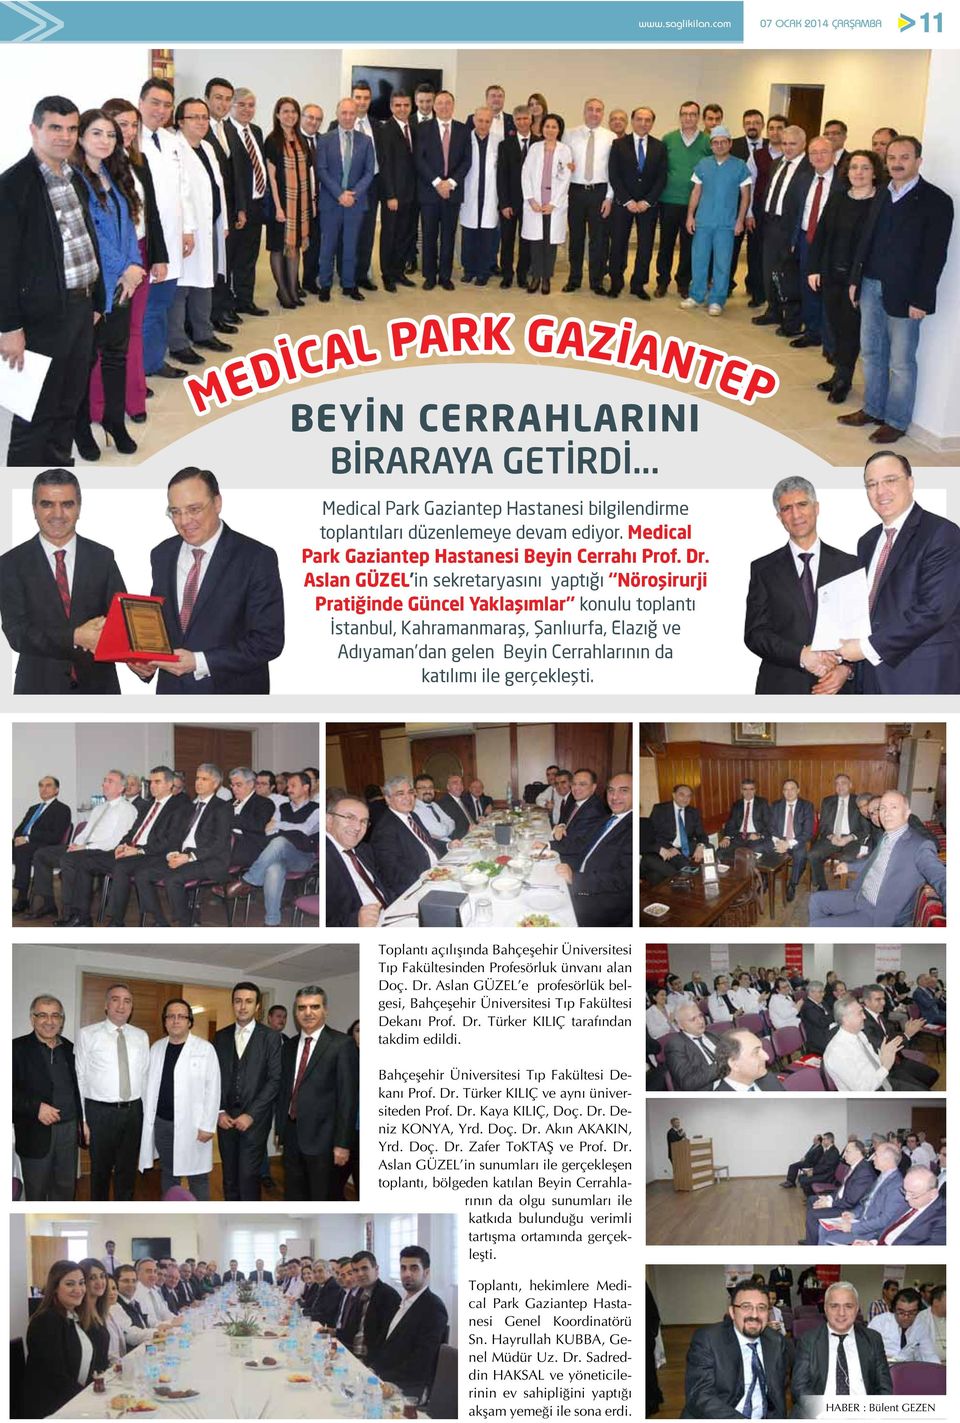 Aslan GÜZEL in sekretaryasını yaptığı Nöroşirurji Pratiğinde Güncel Yaklaşımlar konulu toplantı İstanbul, Kahramanmaraş, Şanlıurfa, Elazığ ve Adıyaman dan gelen Beyin Cerrahlarının da katılımı ile